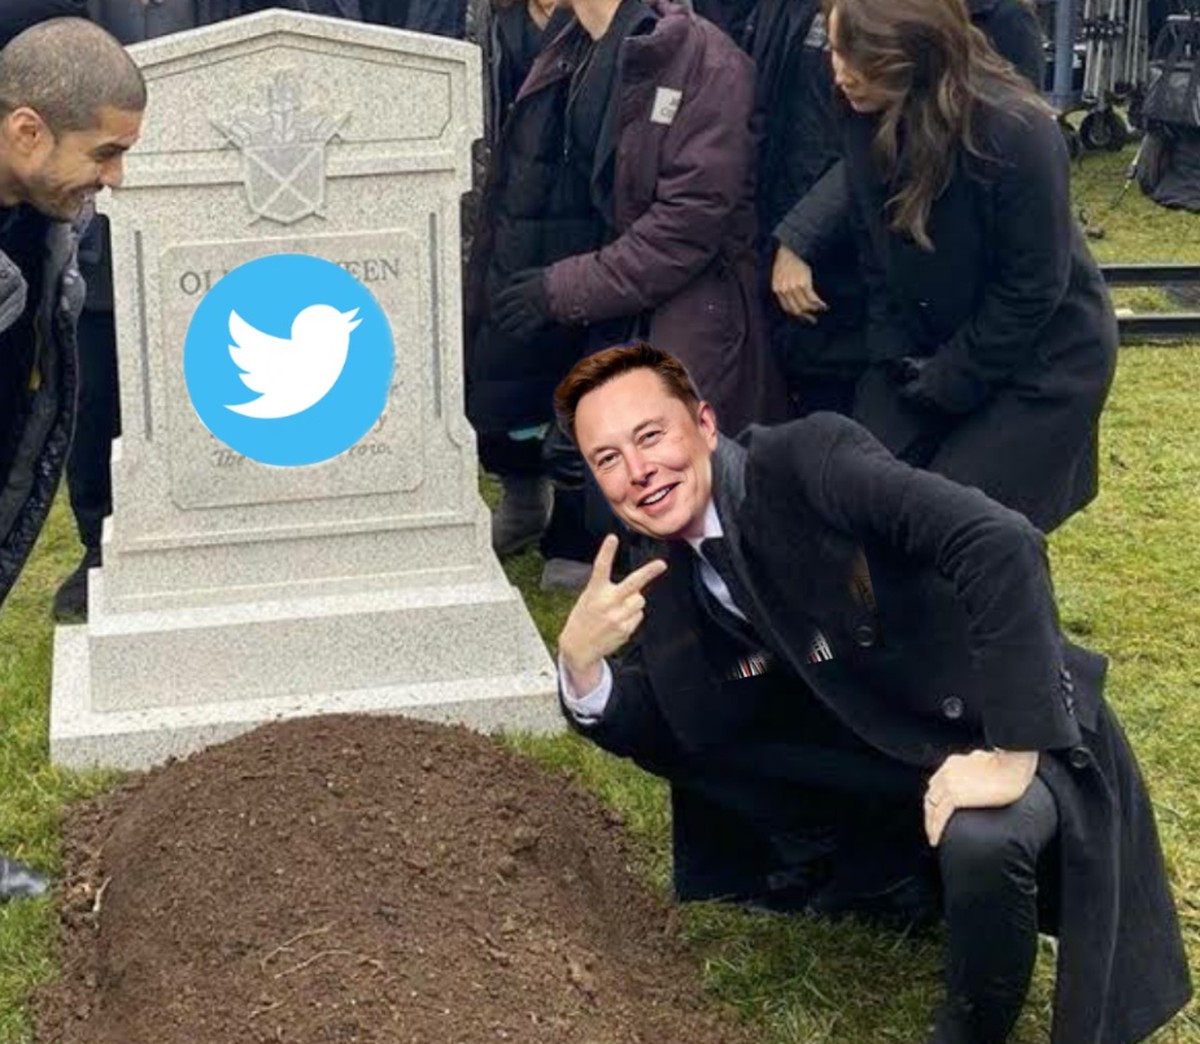 ‘RIP Twitter’: usuários falam em ‘morte’ da rede social após compra de Elon Musk |  Tecnologia